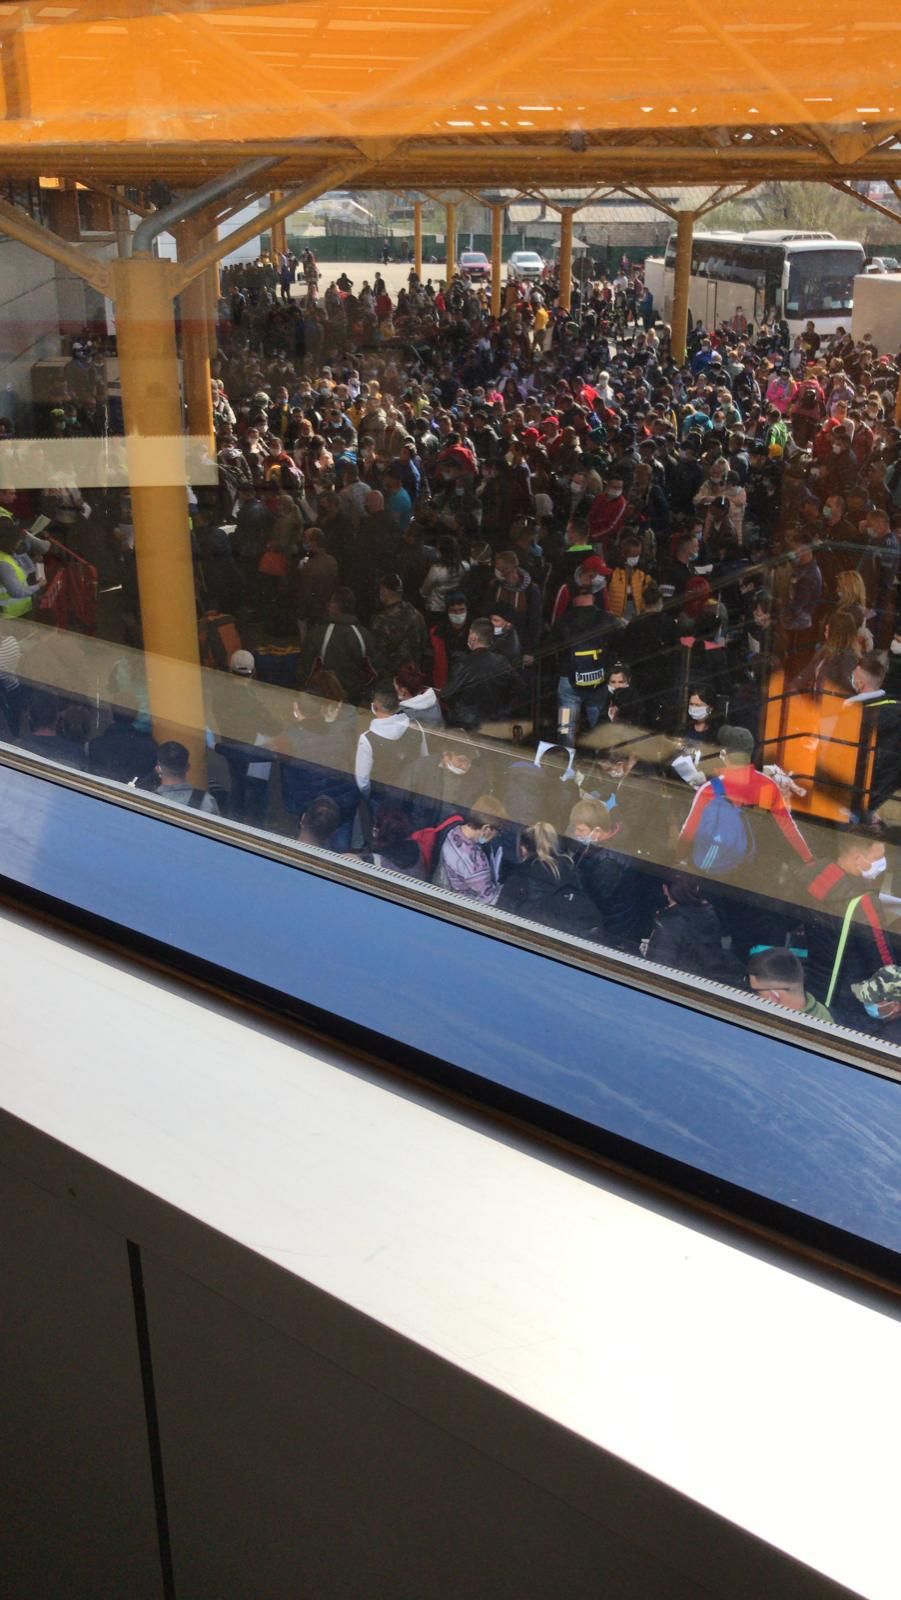 Imagini IREALE surprinse pe aeroportul din Cluj! 2000 de oameni intr-o inghesuiala TERIBILA! Se pleaca in MASA la munca in Germania_2